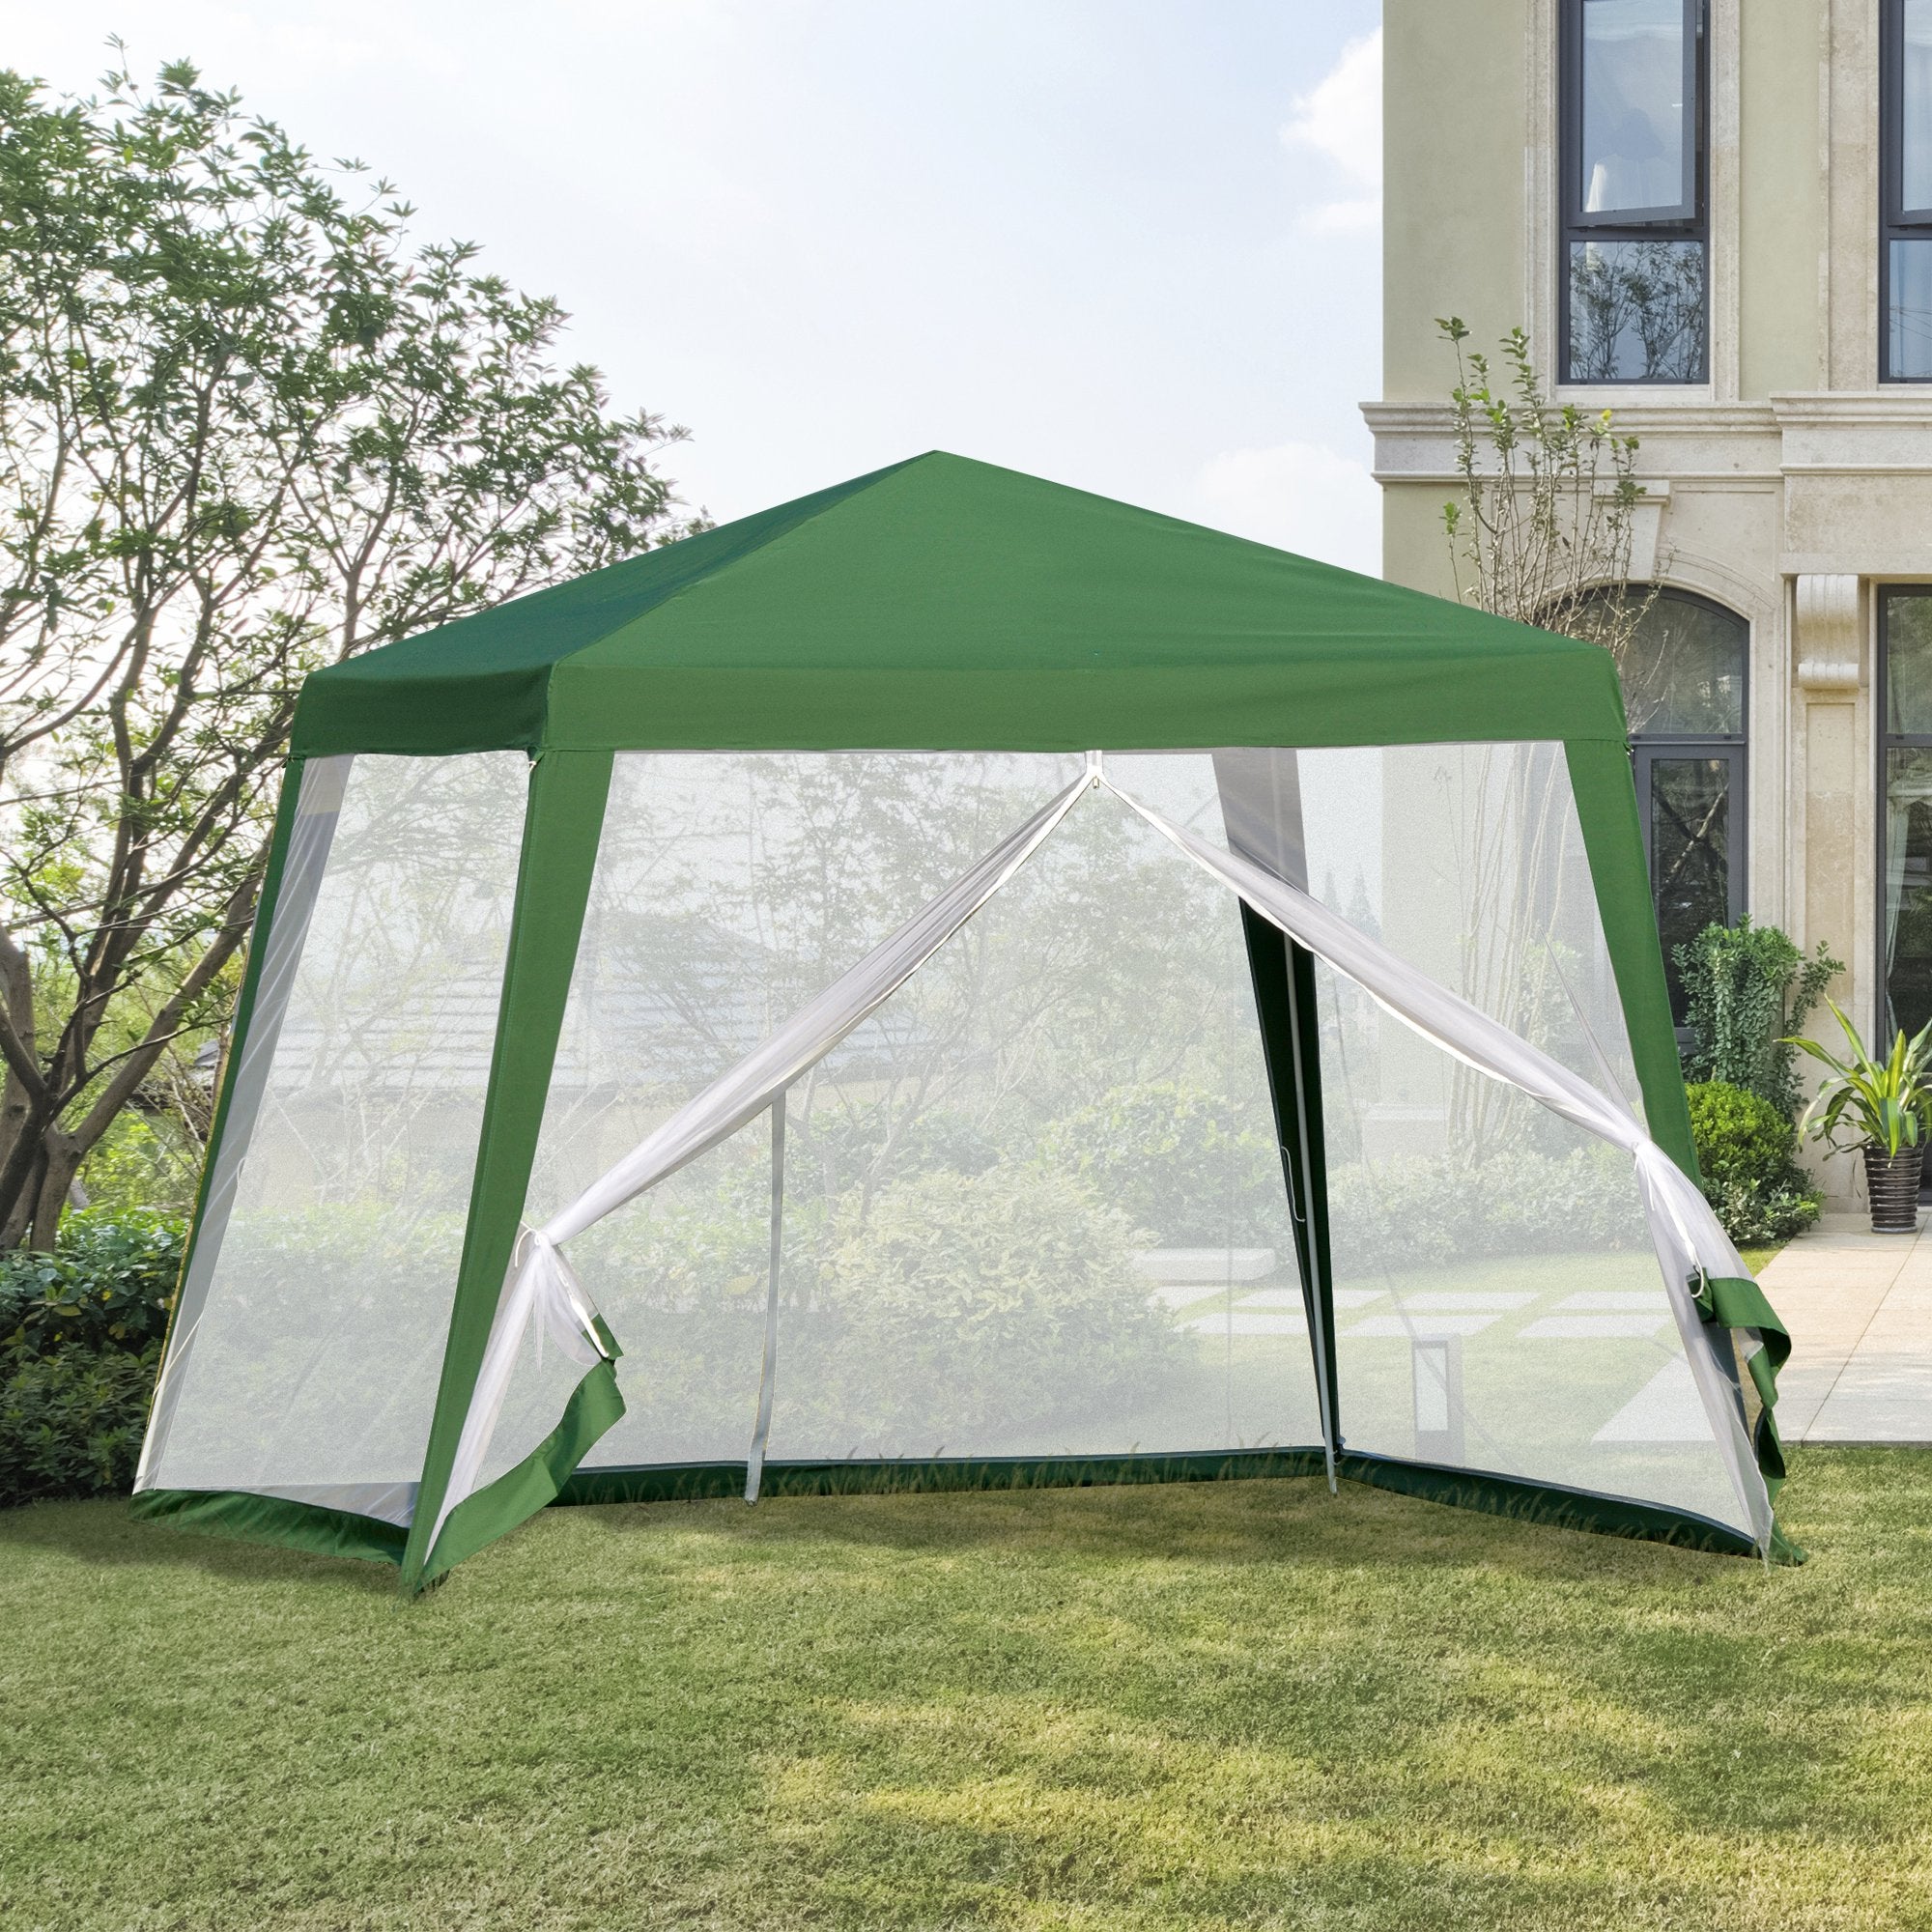 Nancy's Mount Vernon Garden Pavilion - Tente de fête - Avec moustiquaire - Polyester - Vert - 300 x 300 cm